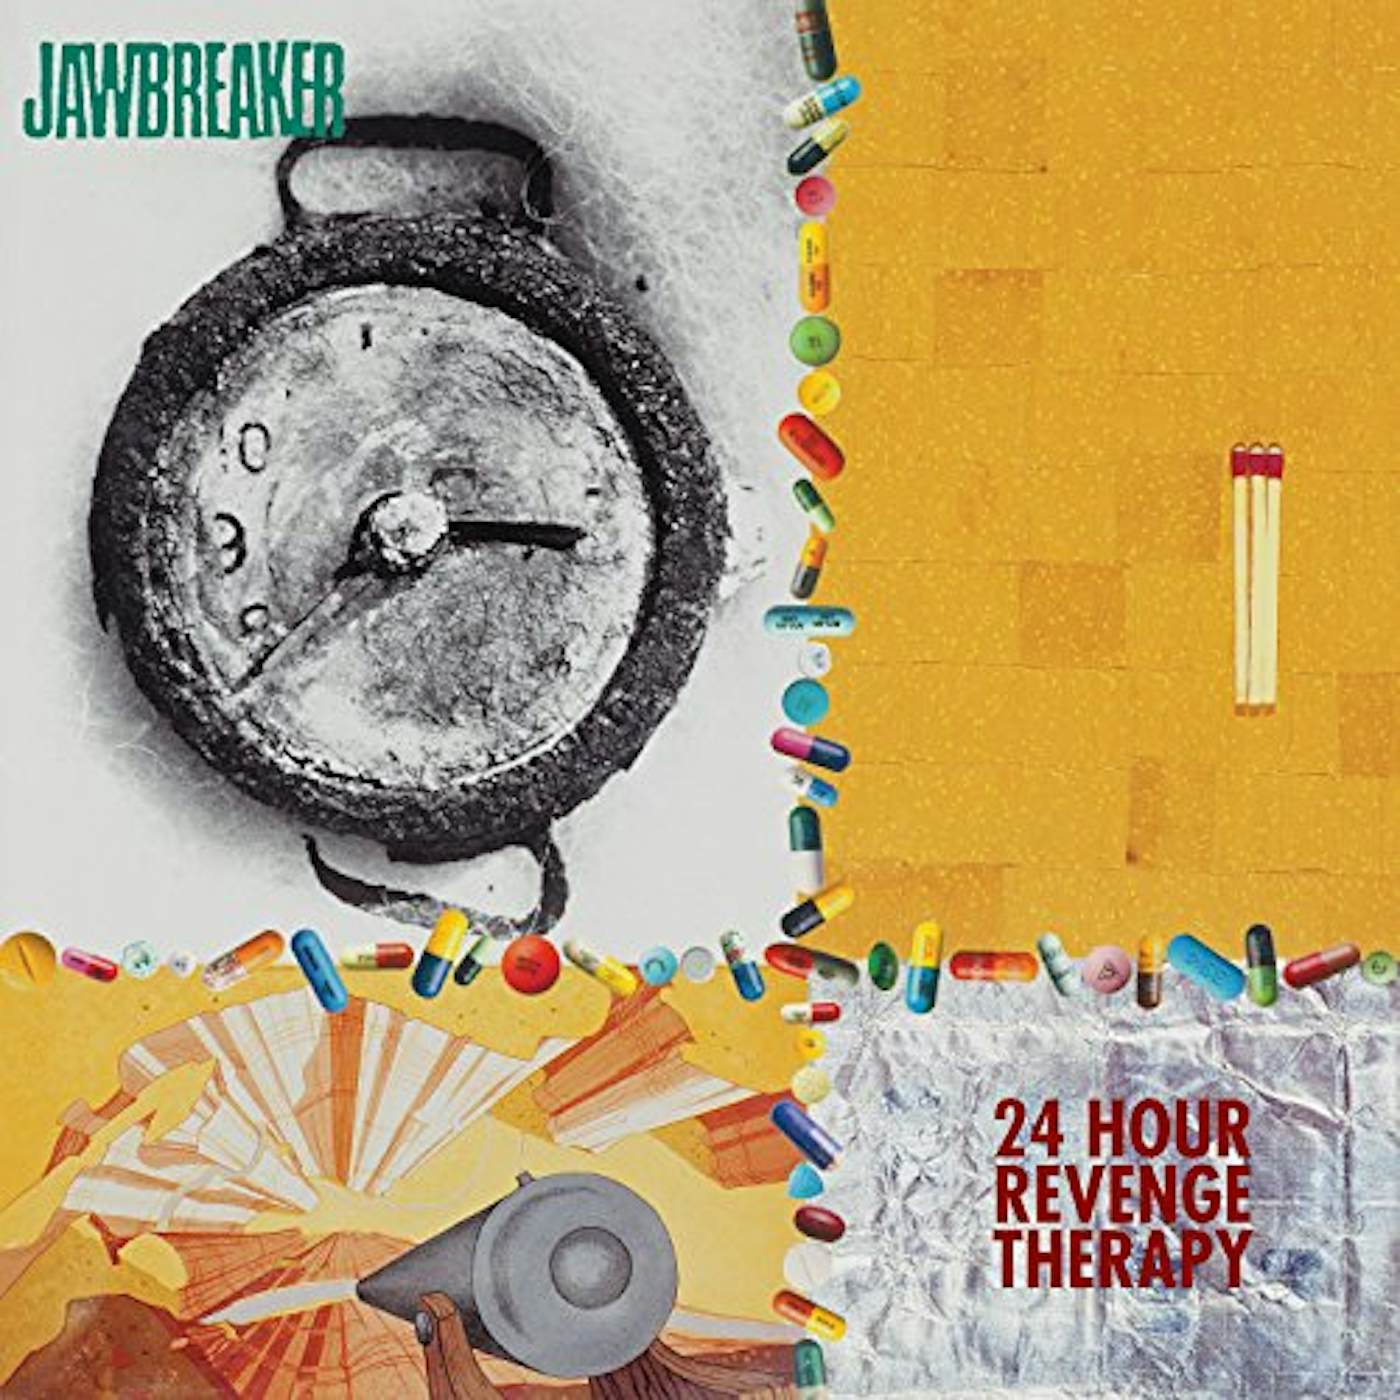 Jawbreaker 24 HOUR REVENGE THERAPY Vinyl Record